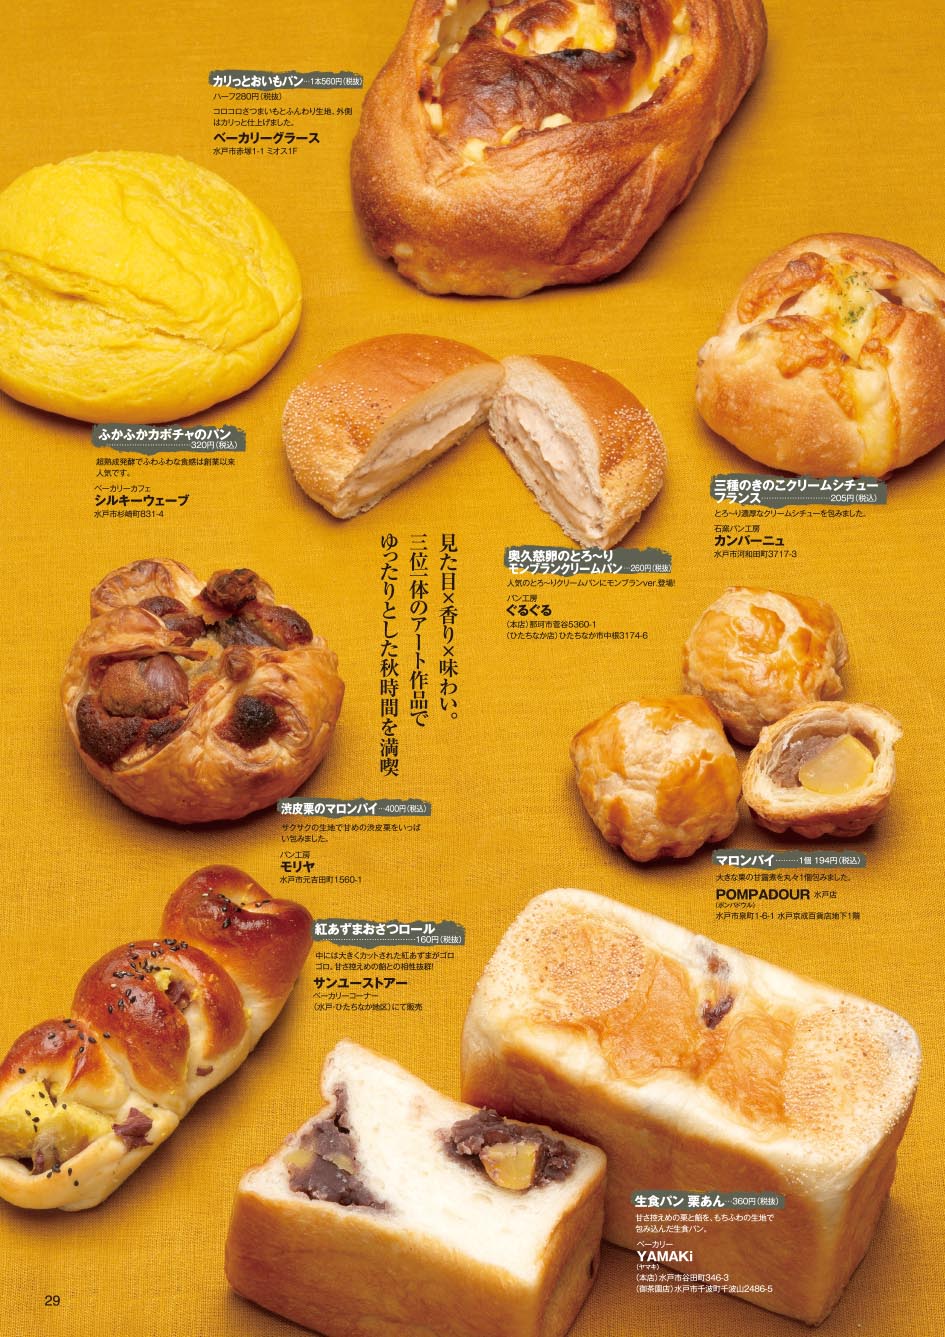 食事と私 Artな関係 ページ 410 月刊ぷらざ 茨城県央版webサイト